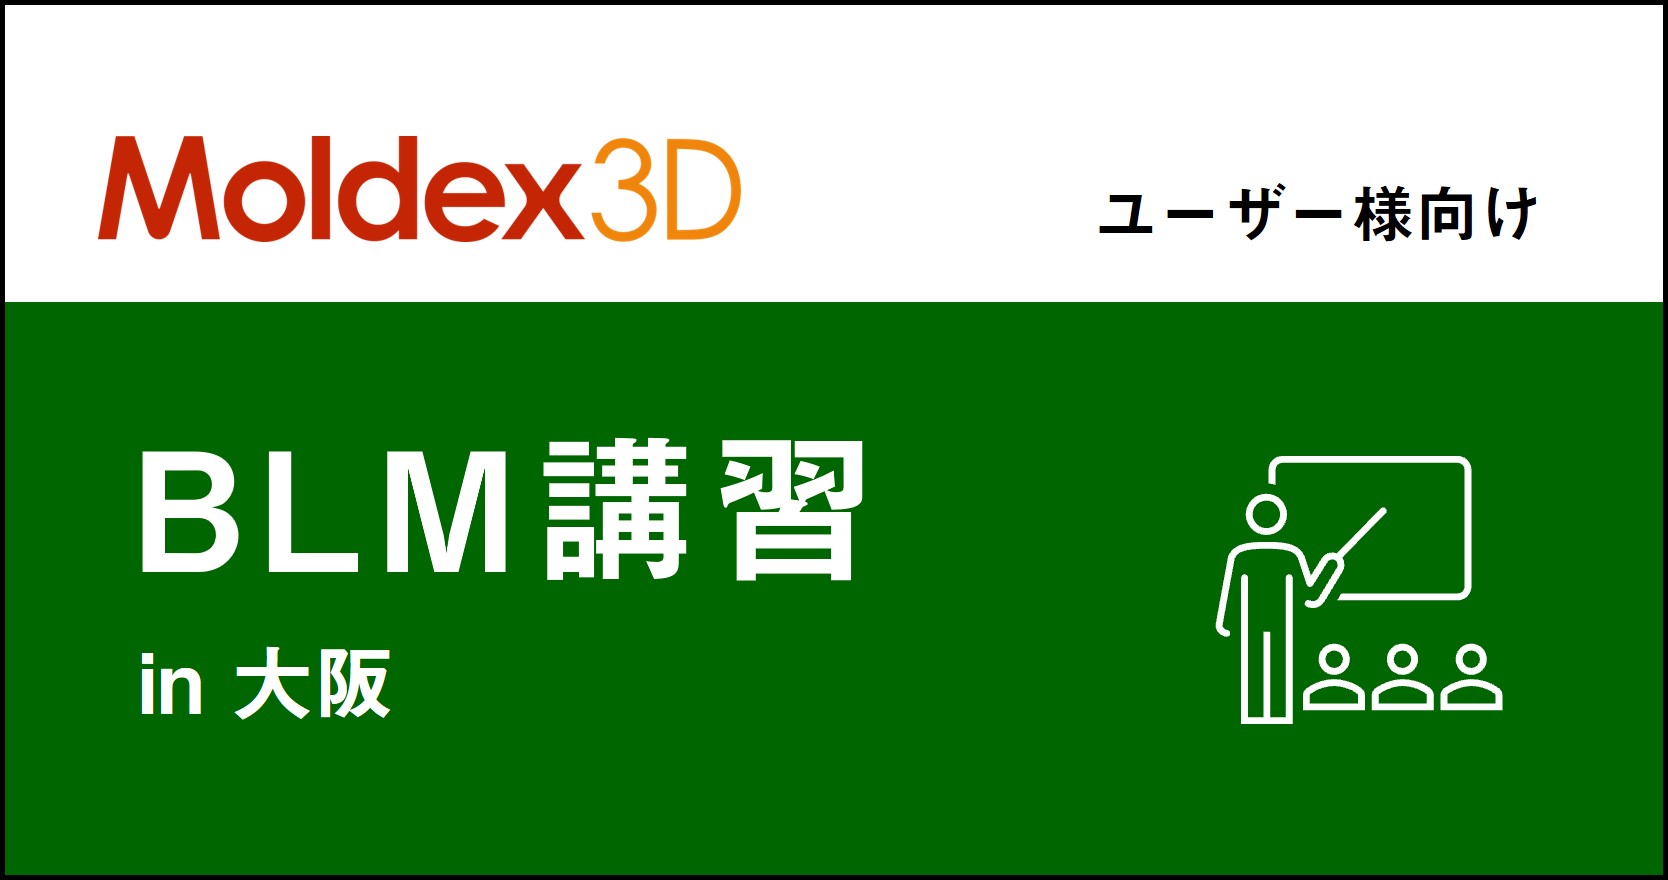 【大阪】4~5月 Moldex3D/ BLM 講習